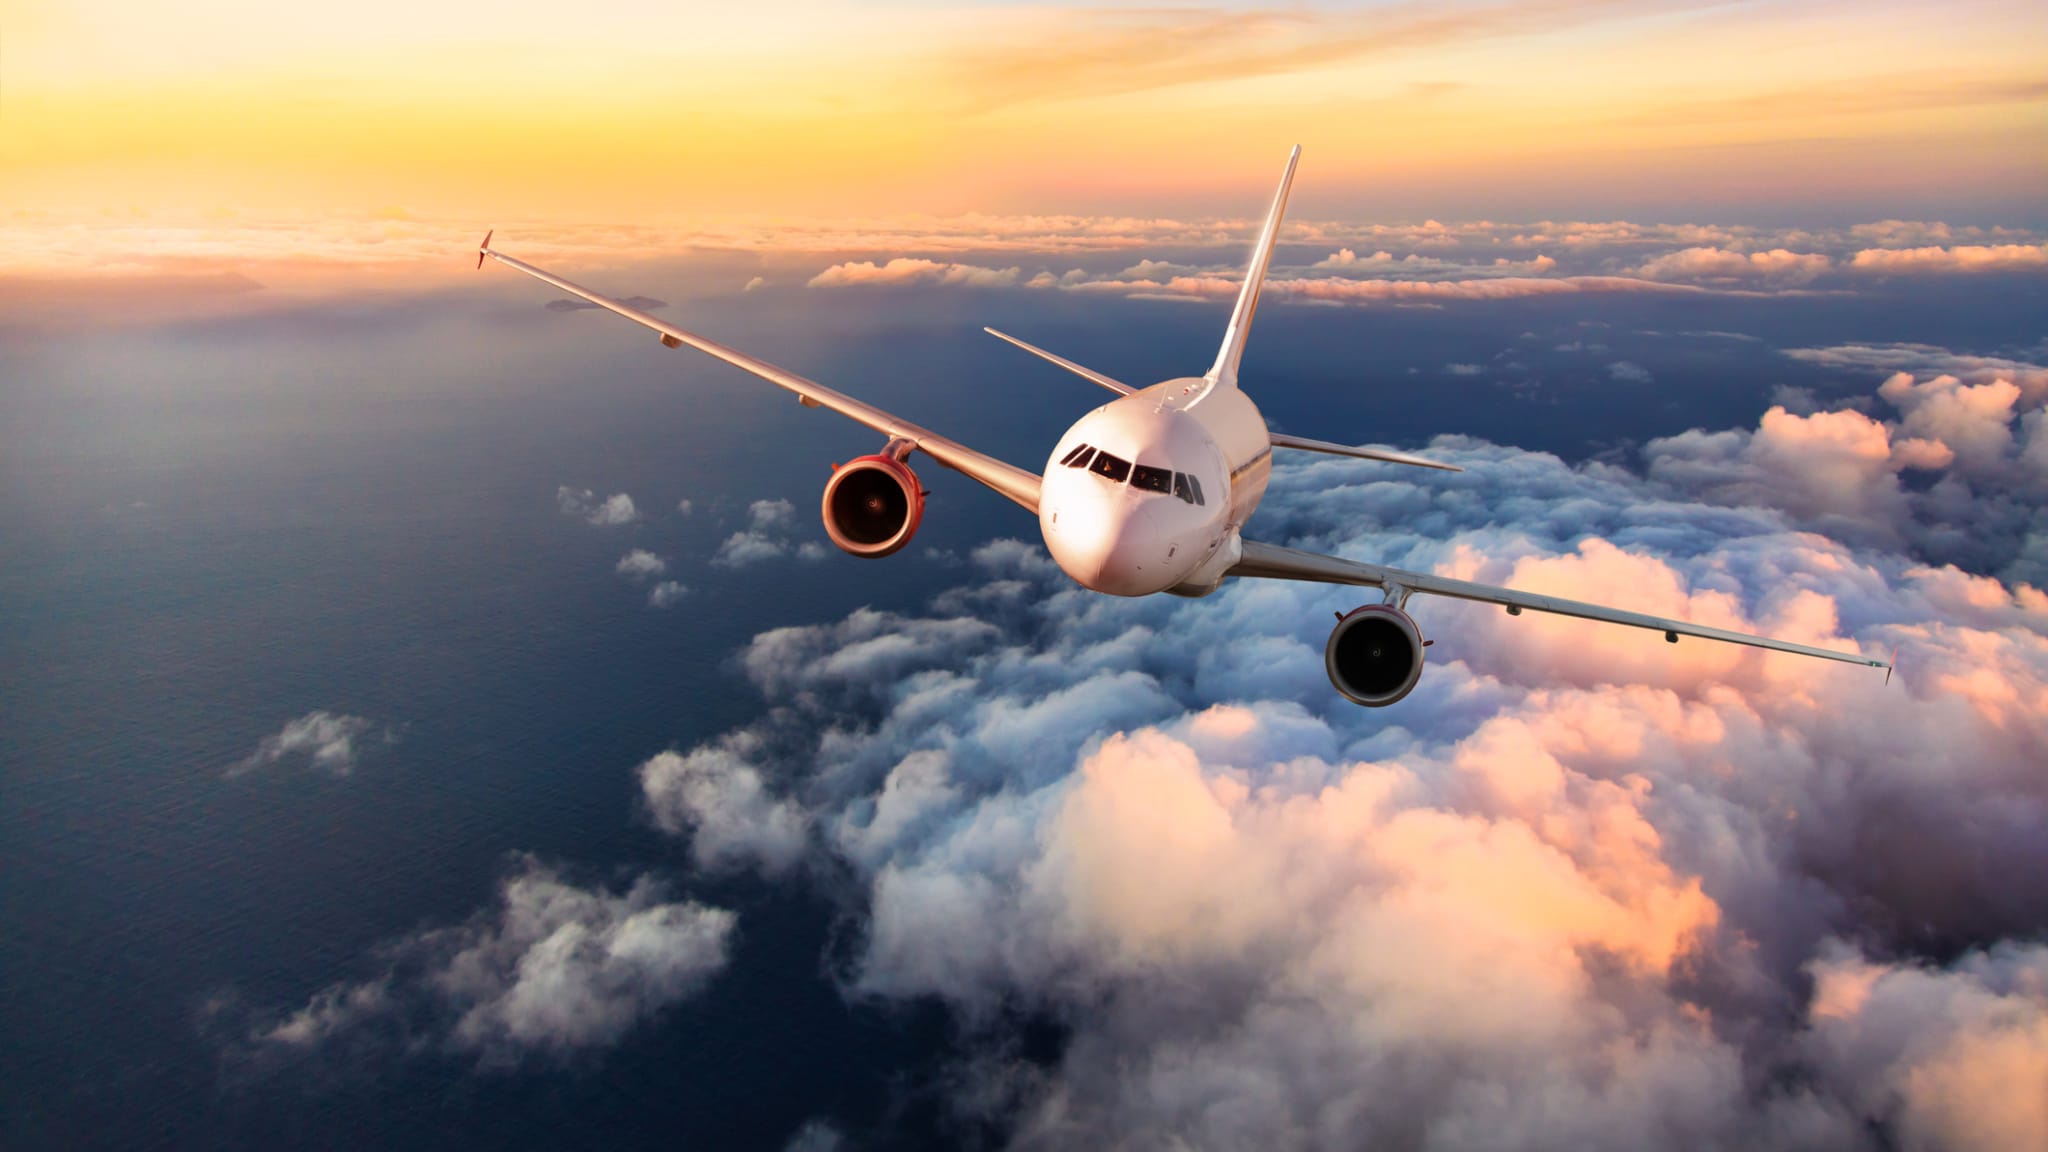 Flugzeug über den Wolken © Jag_cz/iStock / Getty Images Plus via Getty Images